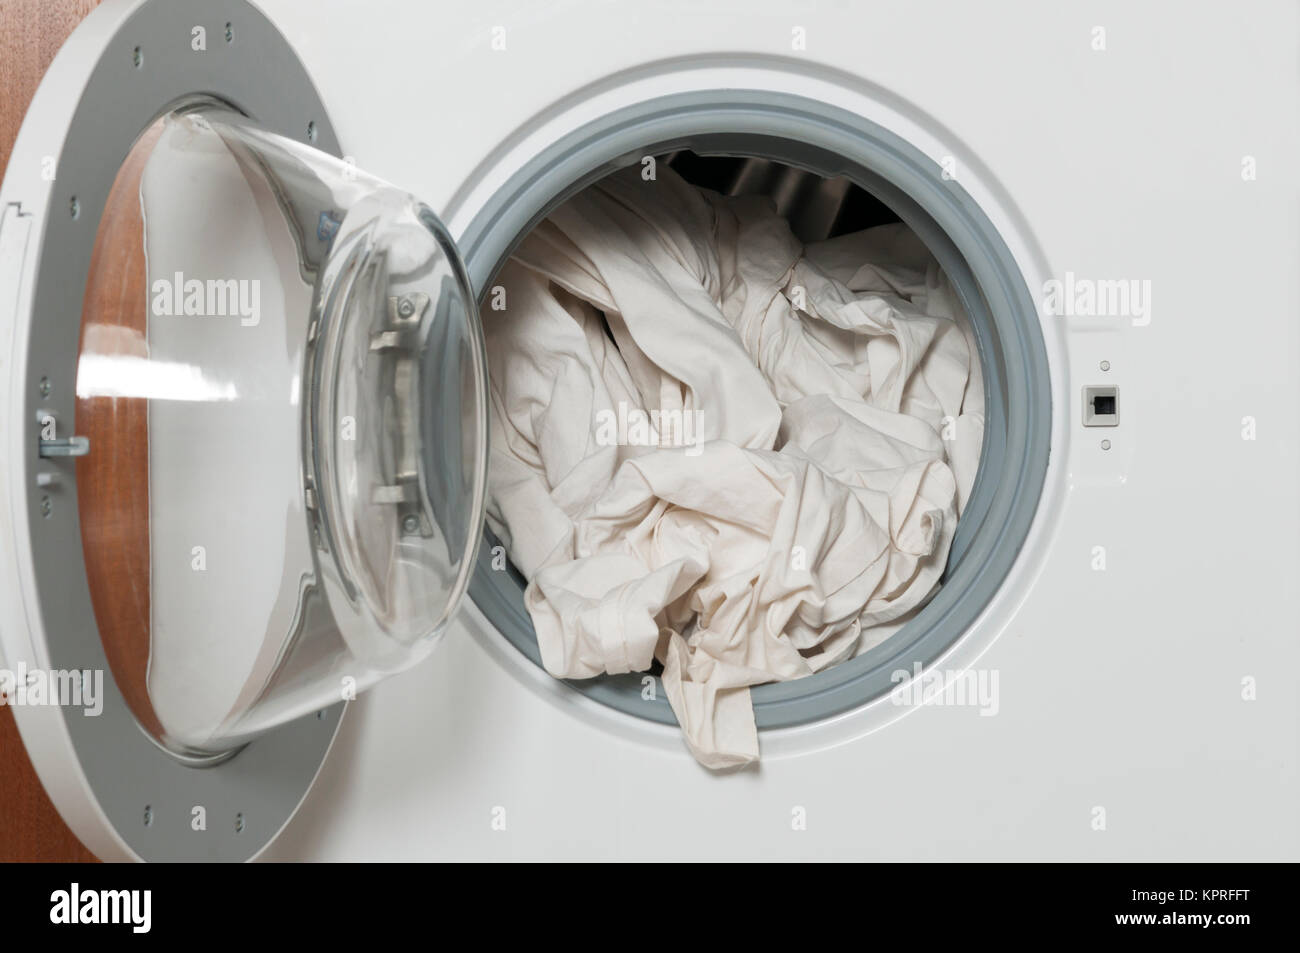 Hausarbeit, Waschservice, Waschmaschine mit weisser Waesche. Stock Photo